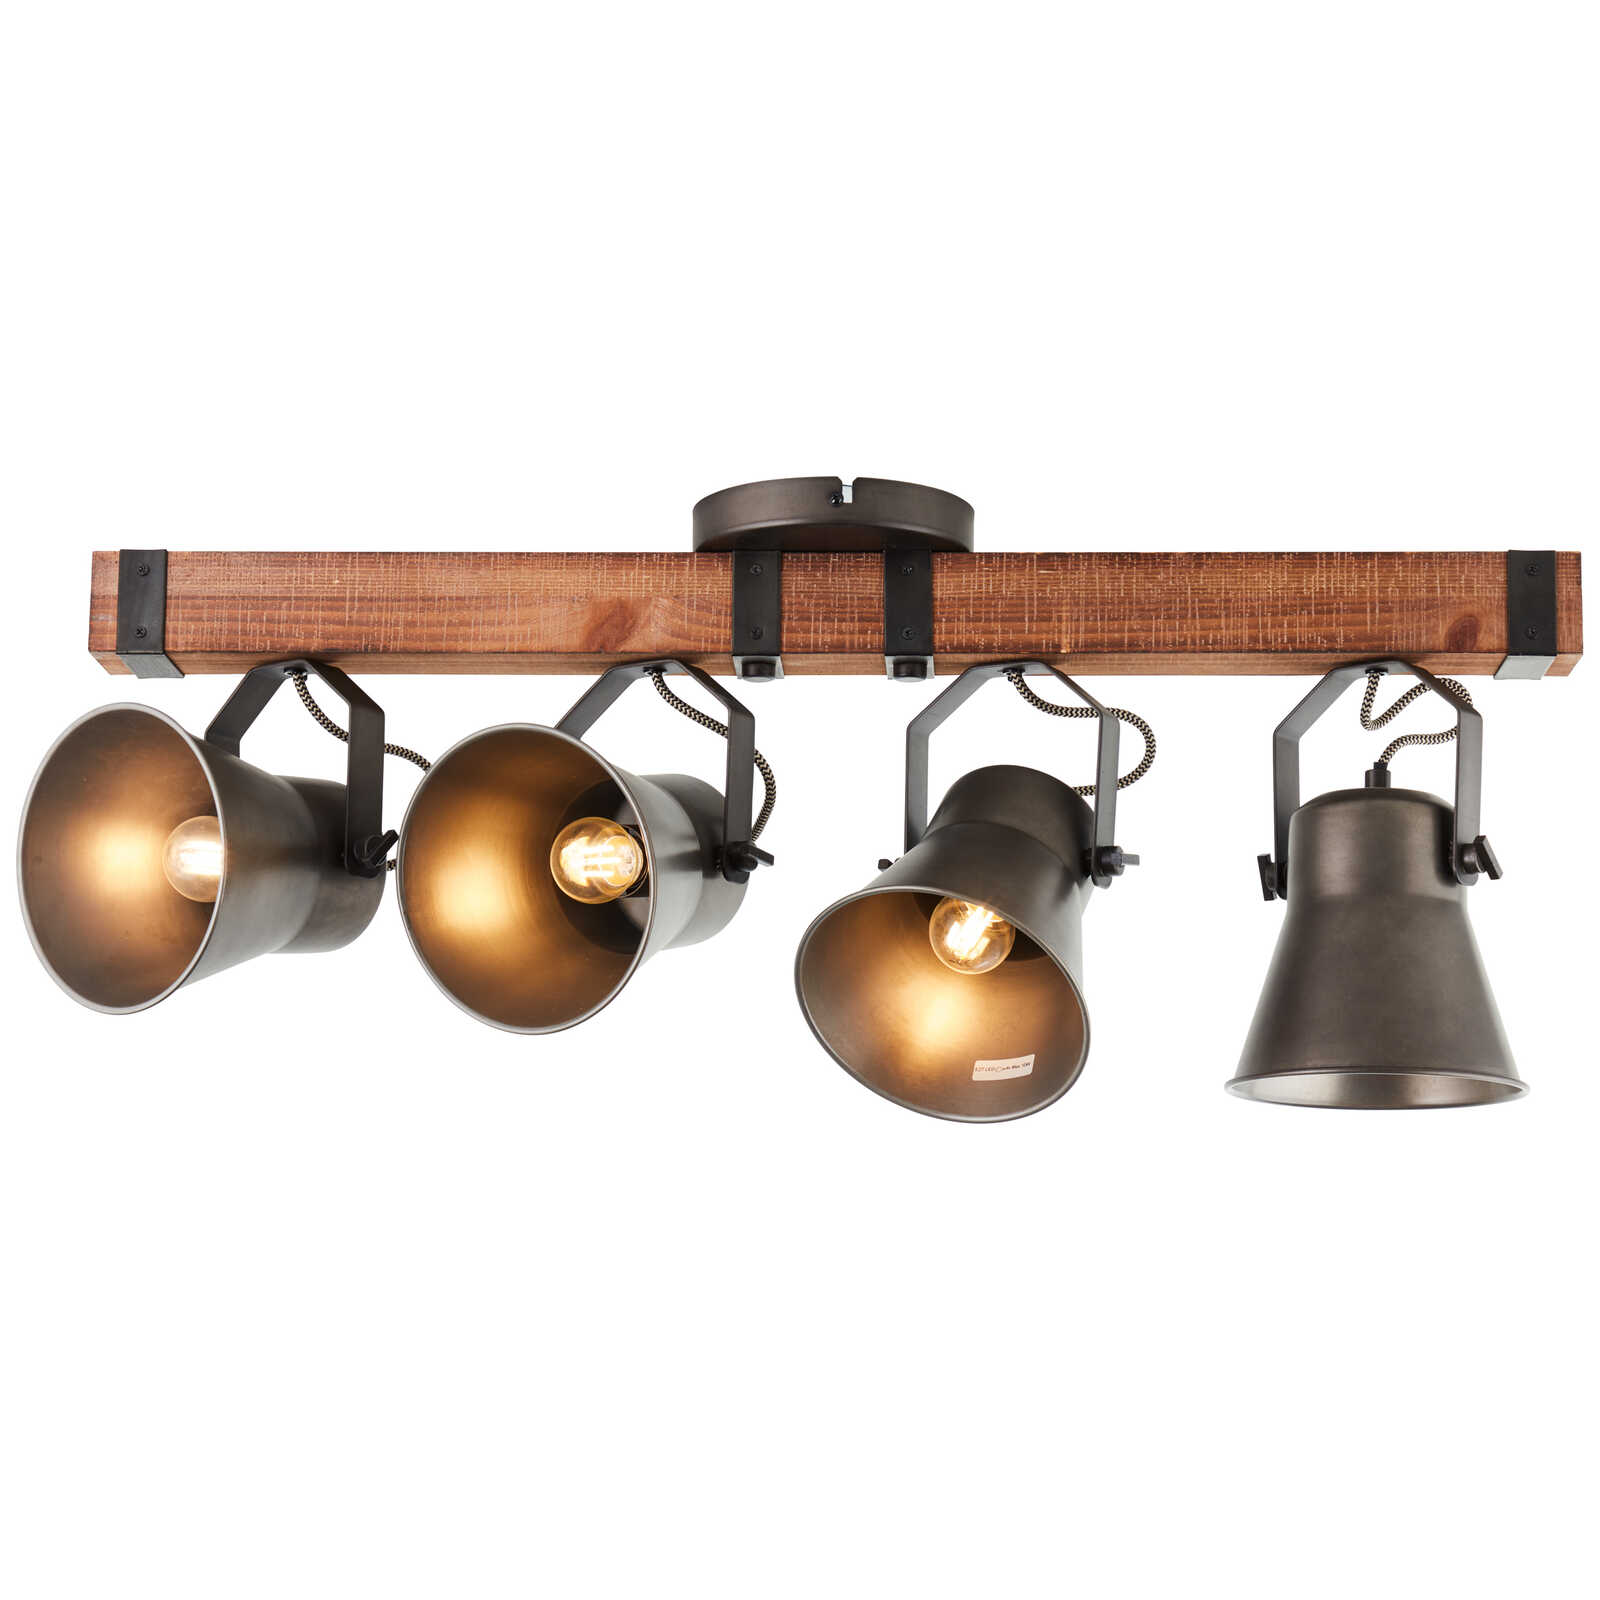             Wooden spotlight bar - Eva 3 - Metallic
        